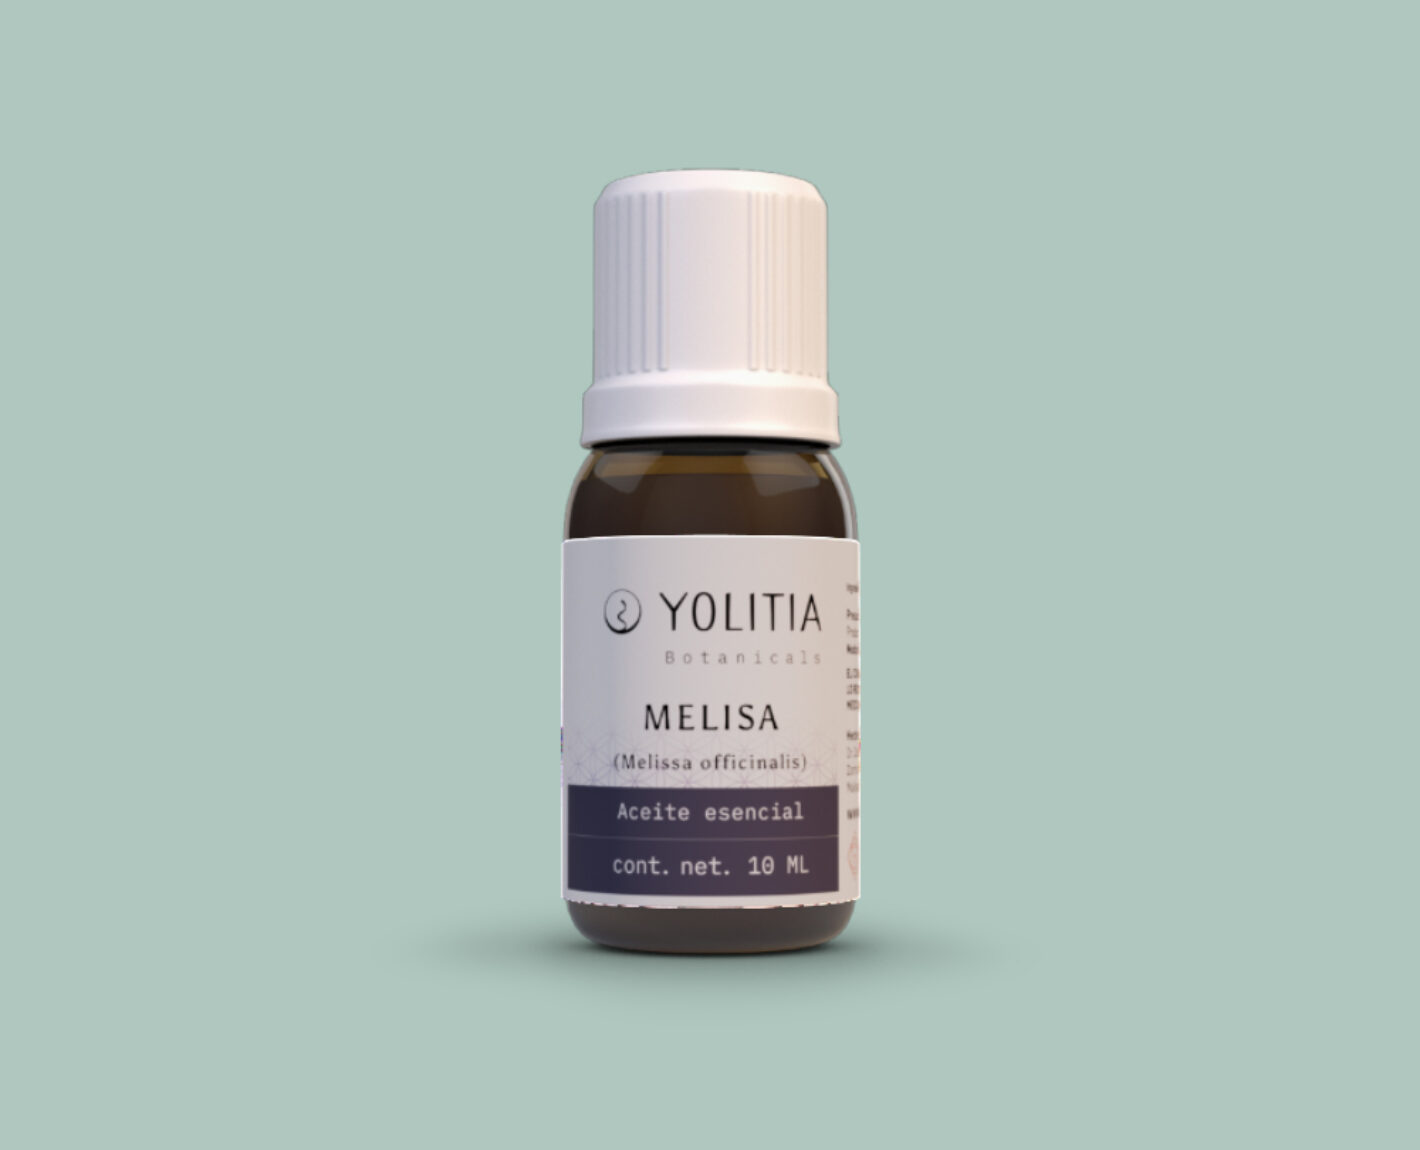 MELISA (Melissa officinalis) Aceite esencial